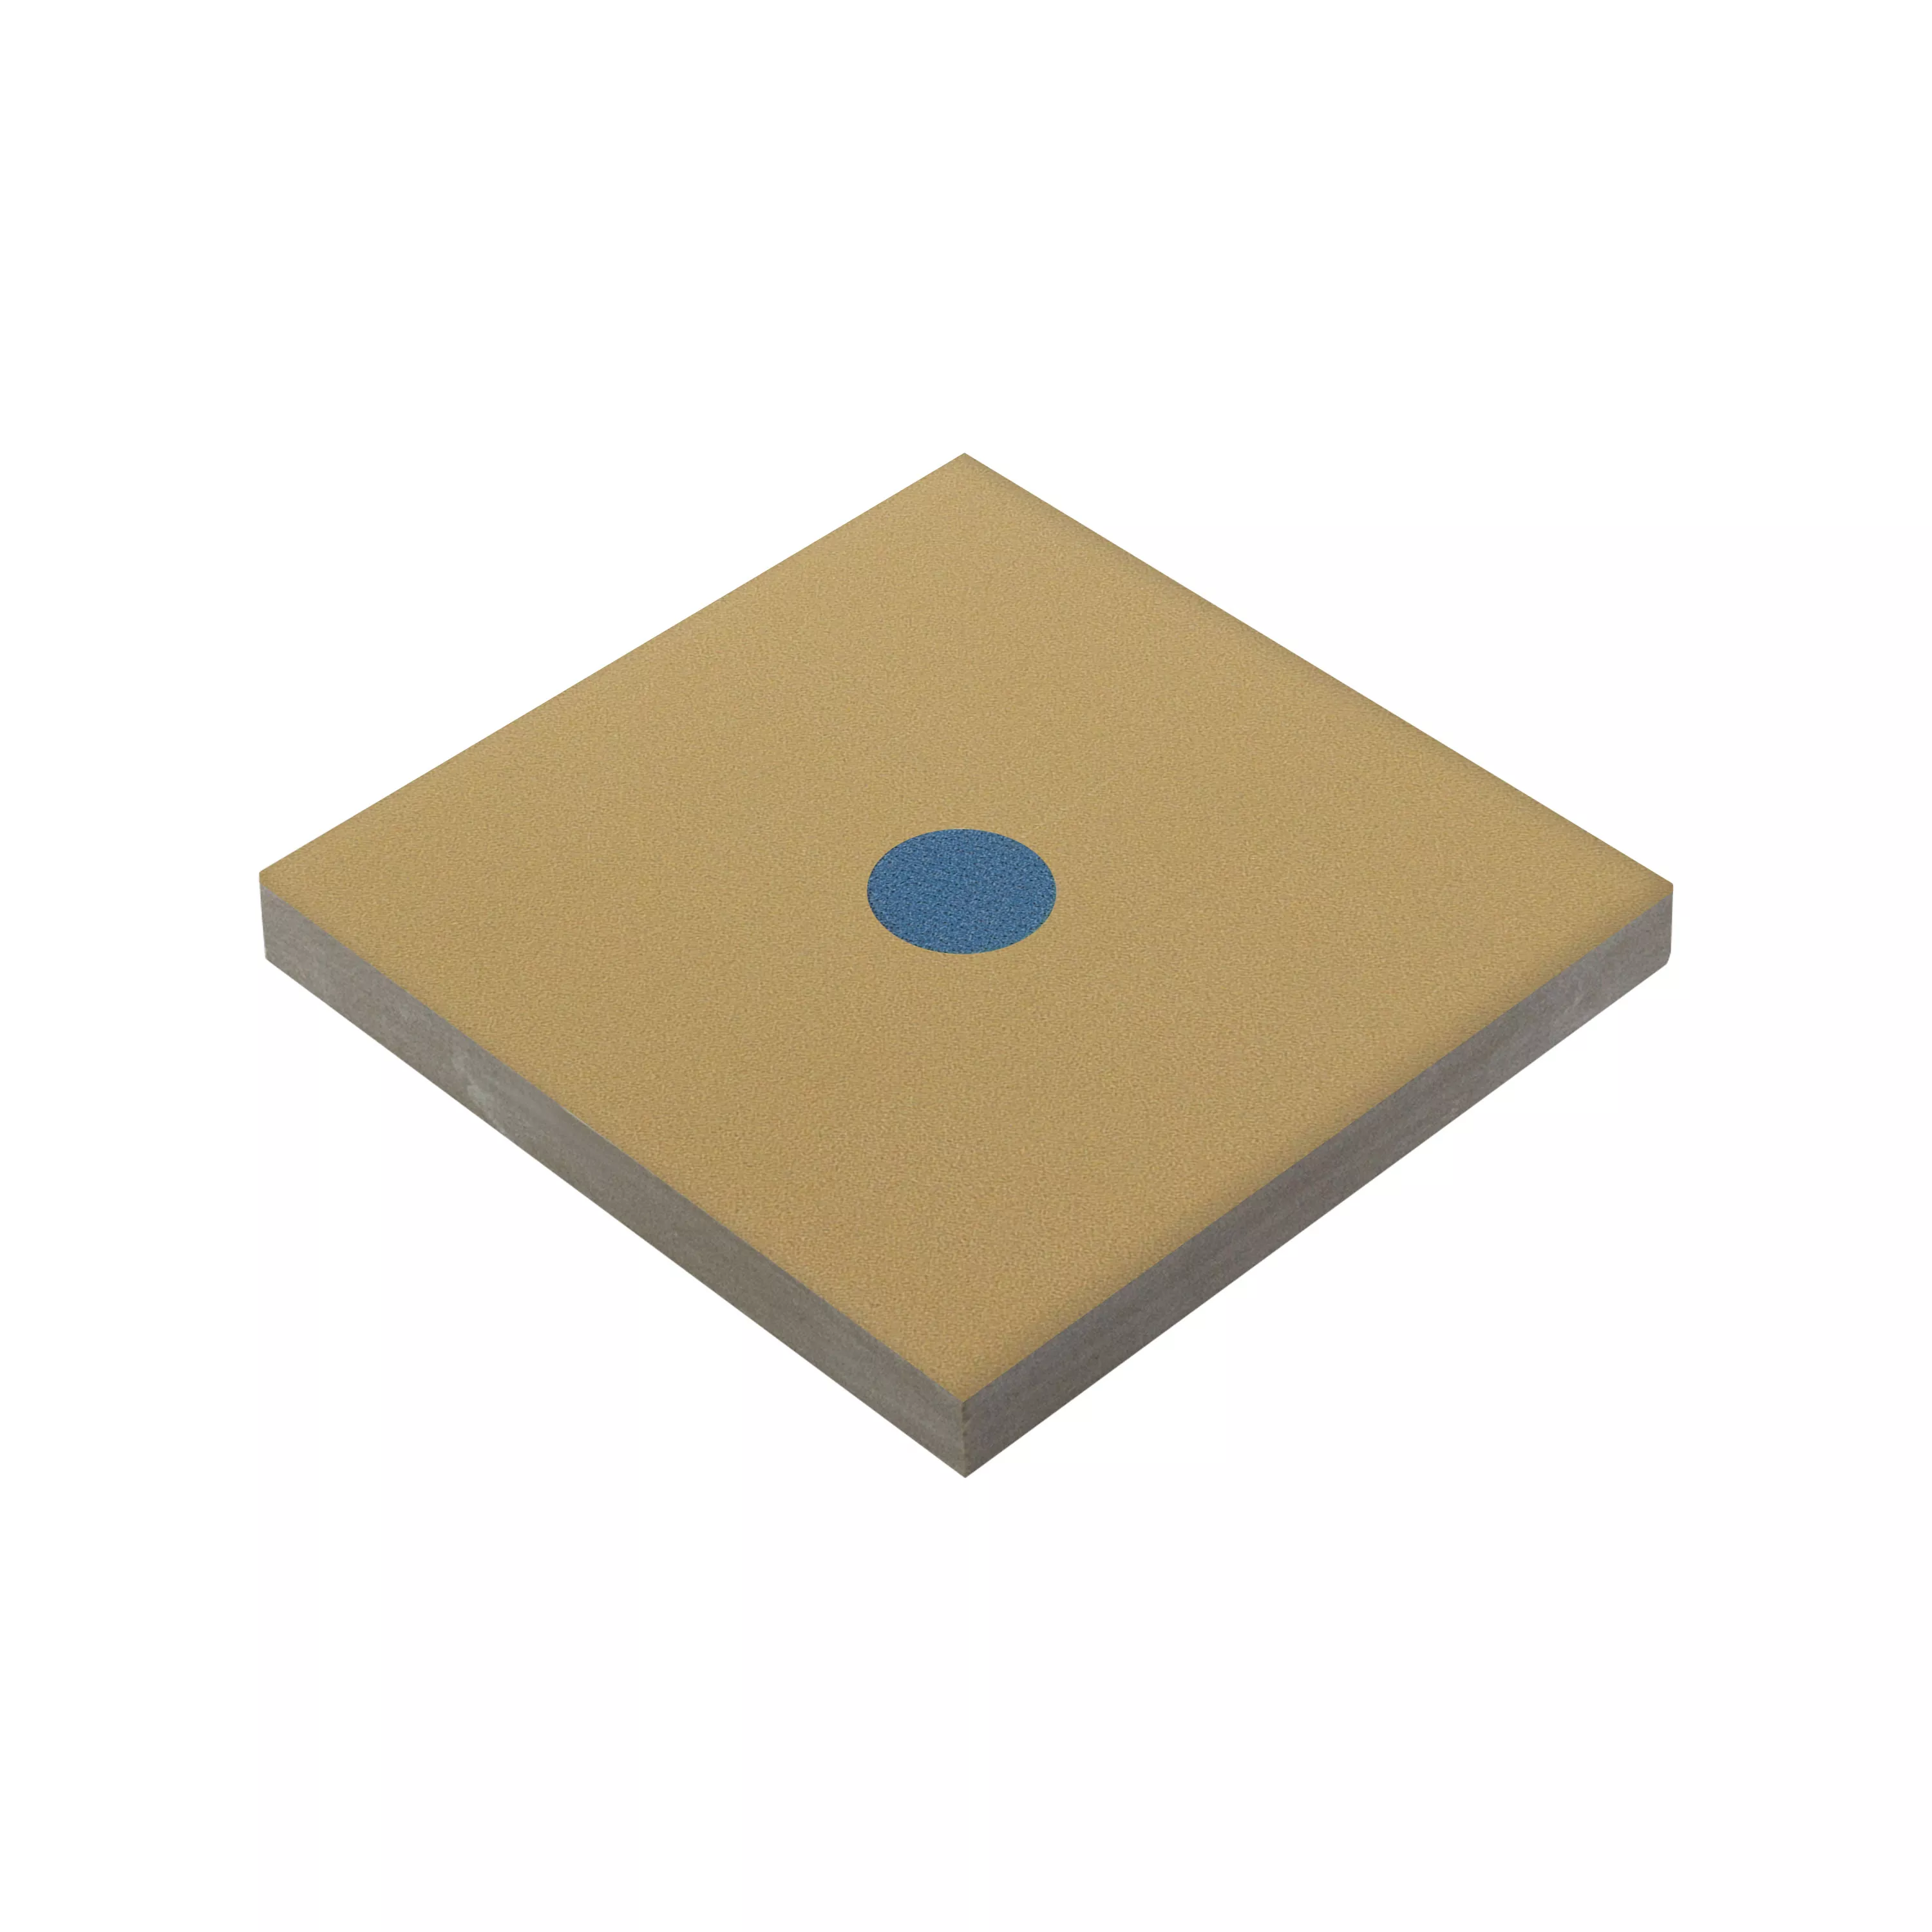 Πορσελάνινα Σκεύη Πλακάκια Genexia Decor Μπεζ Ροζόνη 4,6x4,6cm